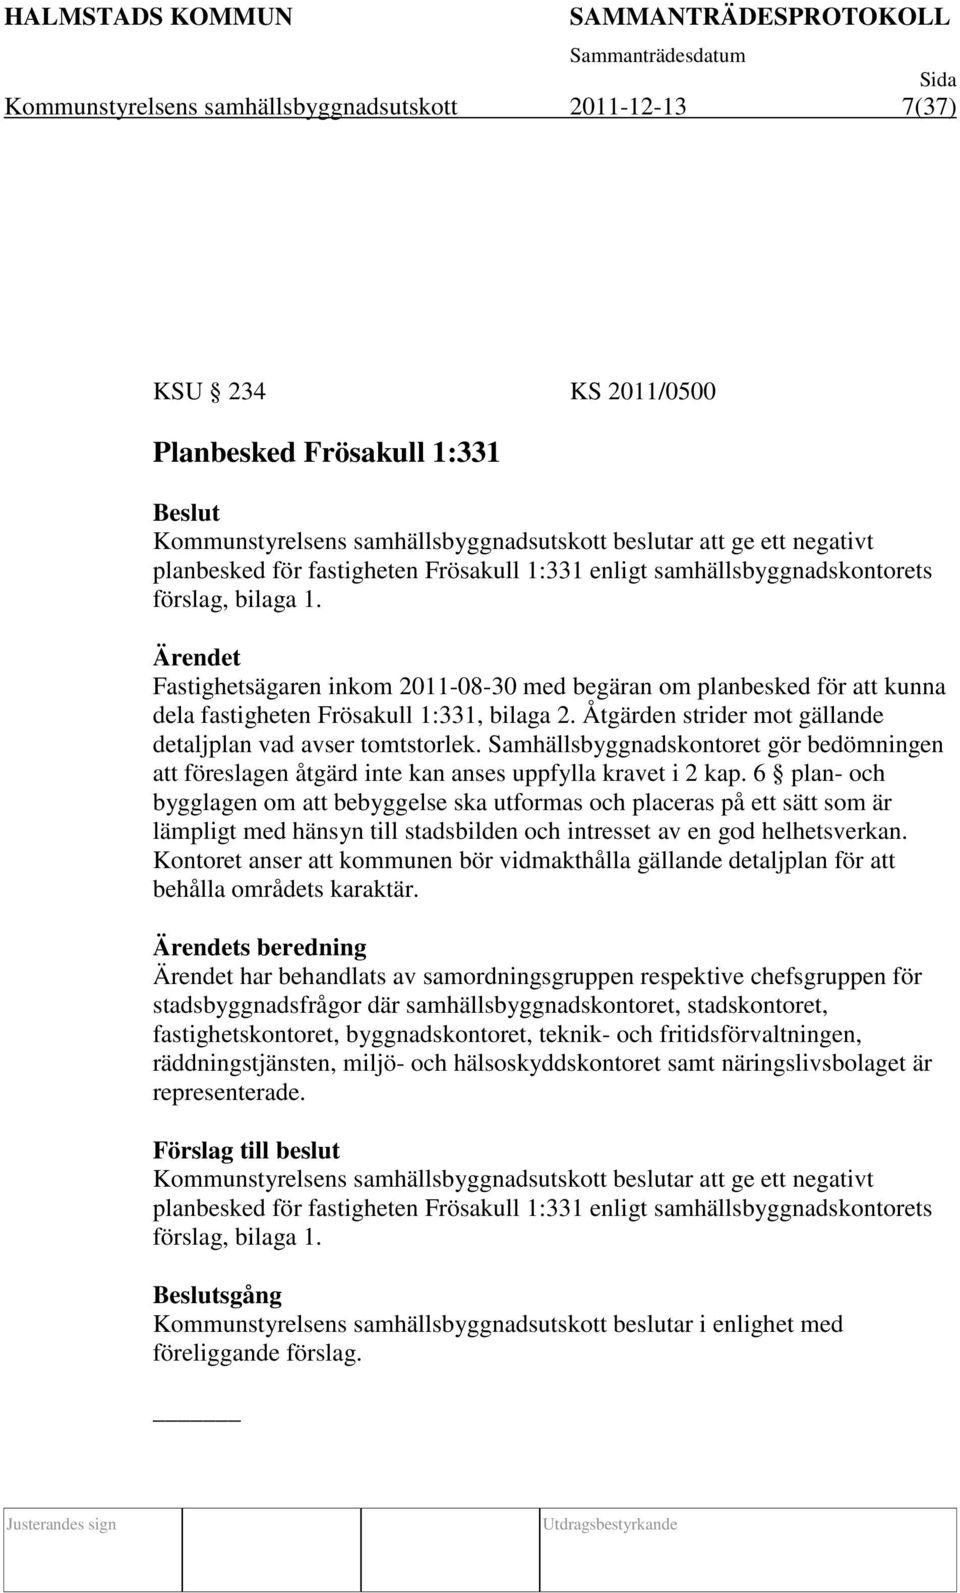 Ärendet Fastighetsägaren inkom 2011-08-30 med begäran om planbesked för att kunna dela fastigheten Frösakull 1:331, bilaga 2. Åtgärden strider mot gällande detaljplan vad avser tomtstorlek.